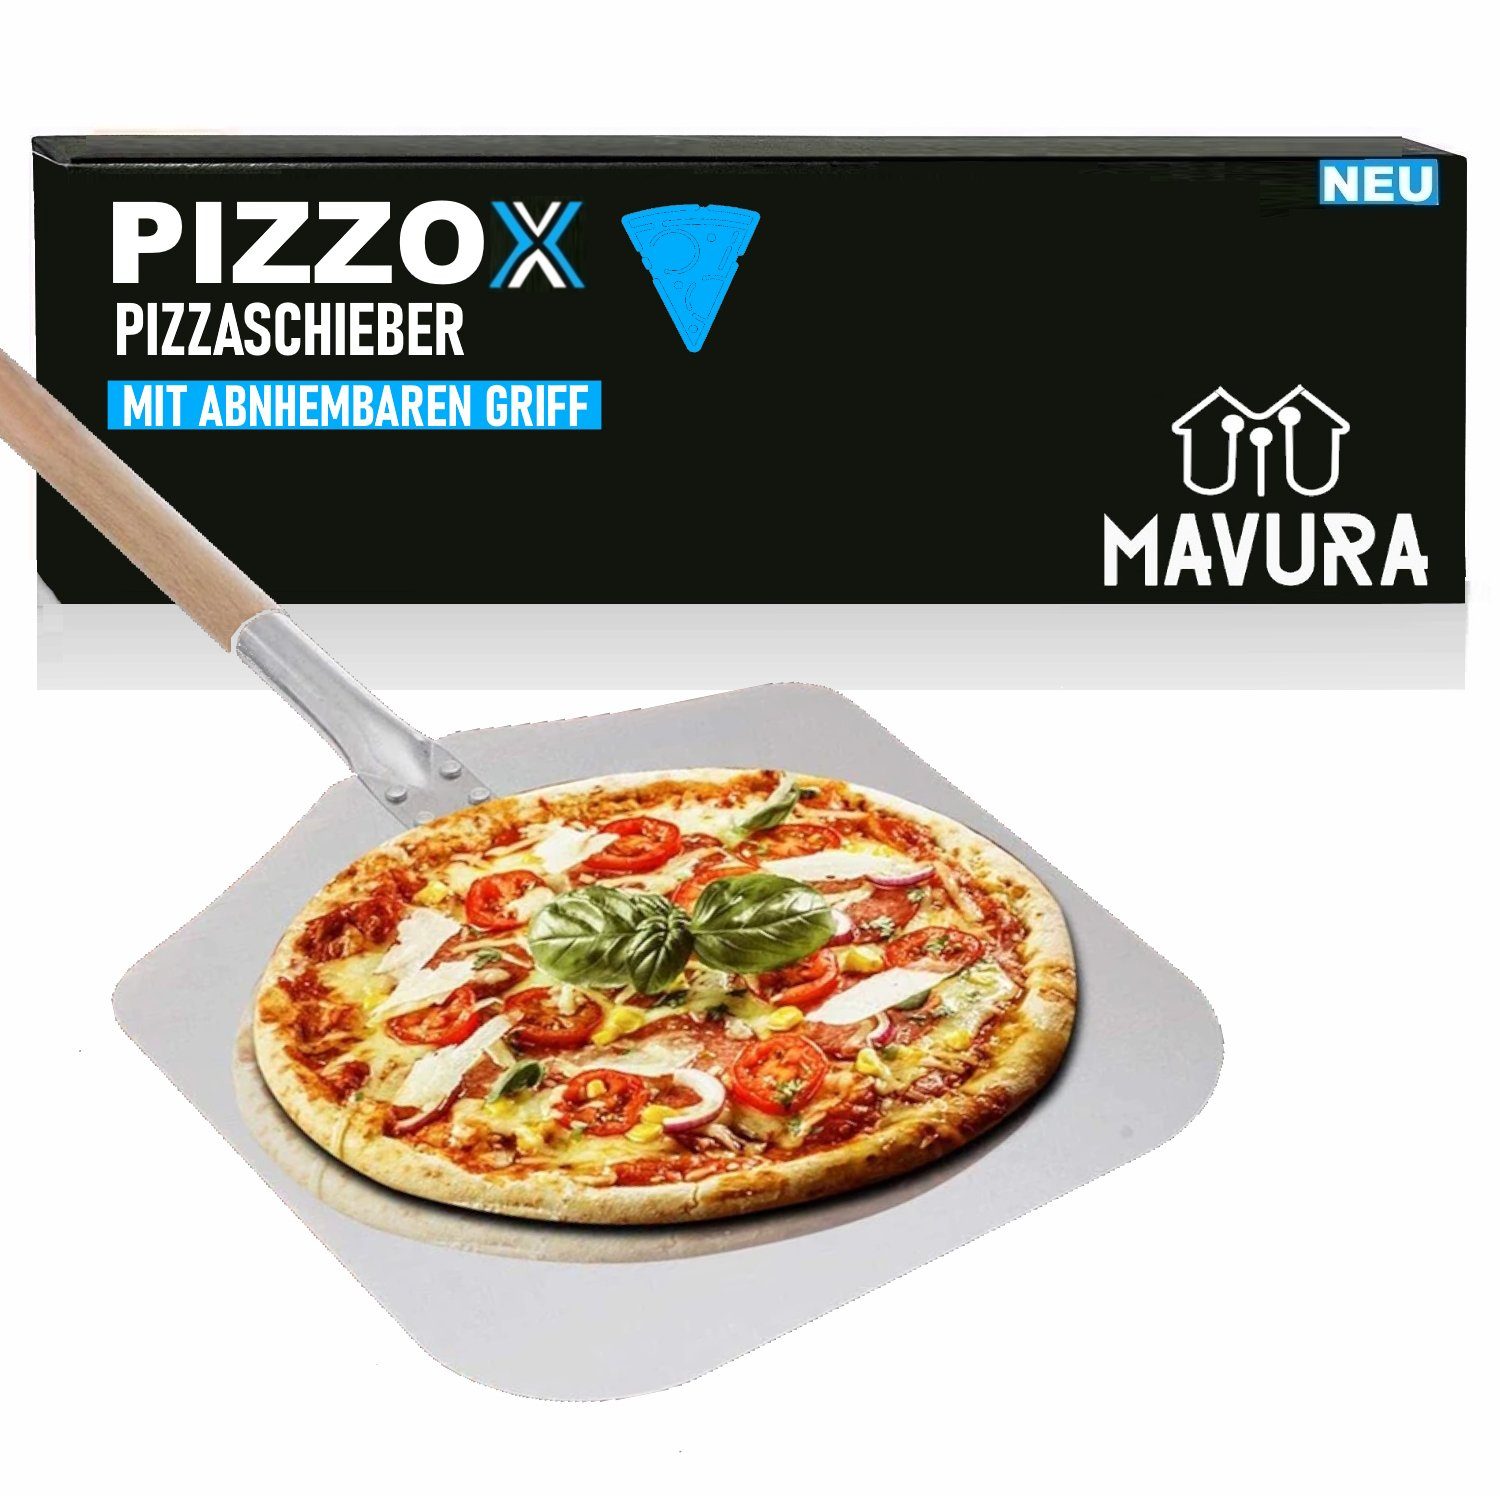 MAVURA Pizzaschieber PIZZOX Premium Pizzaschaufel mit abnehmbarem Griff aus Buchenholz, Edelstahl Pizza Schieber stabiles Gewinde & robuster Holzstab | Pizzaschneider